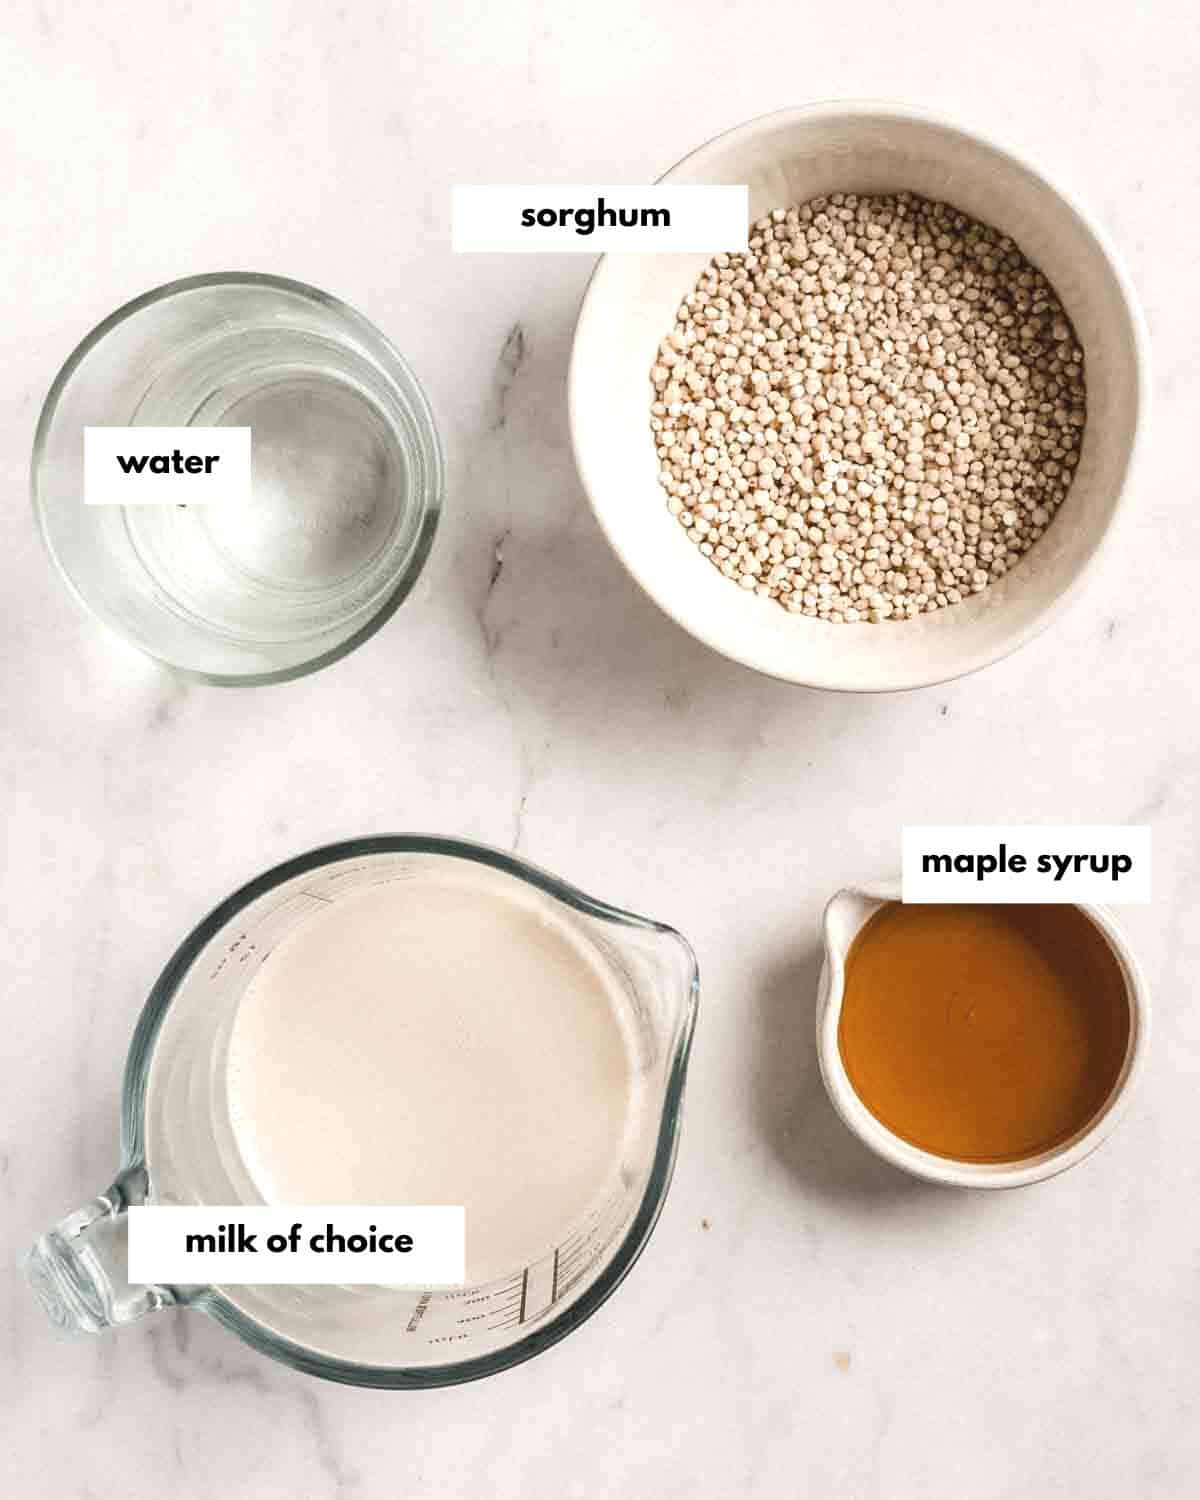 all ingredients needed to make sorghum porridge.